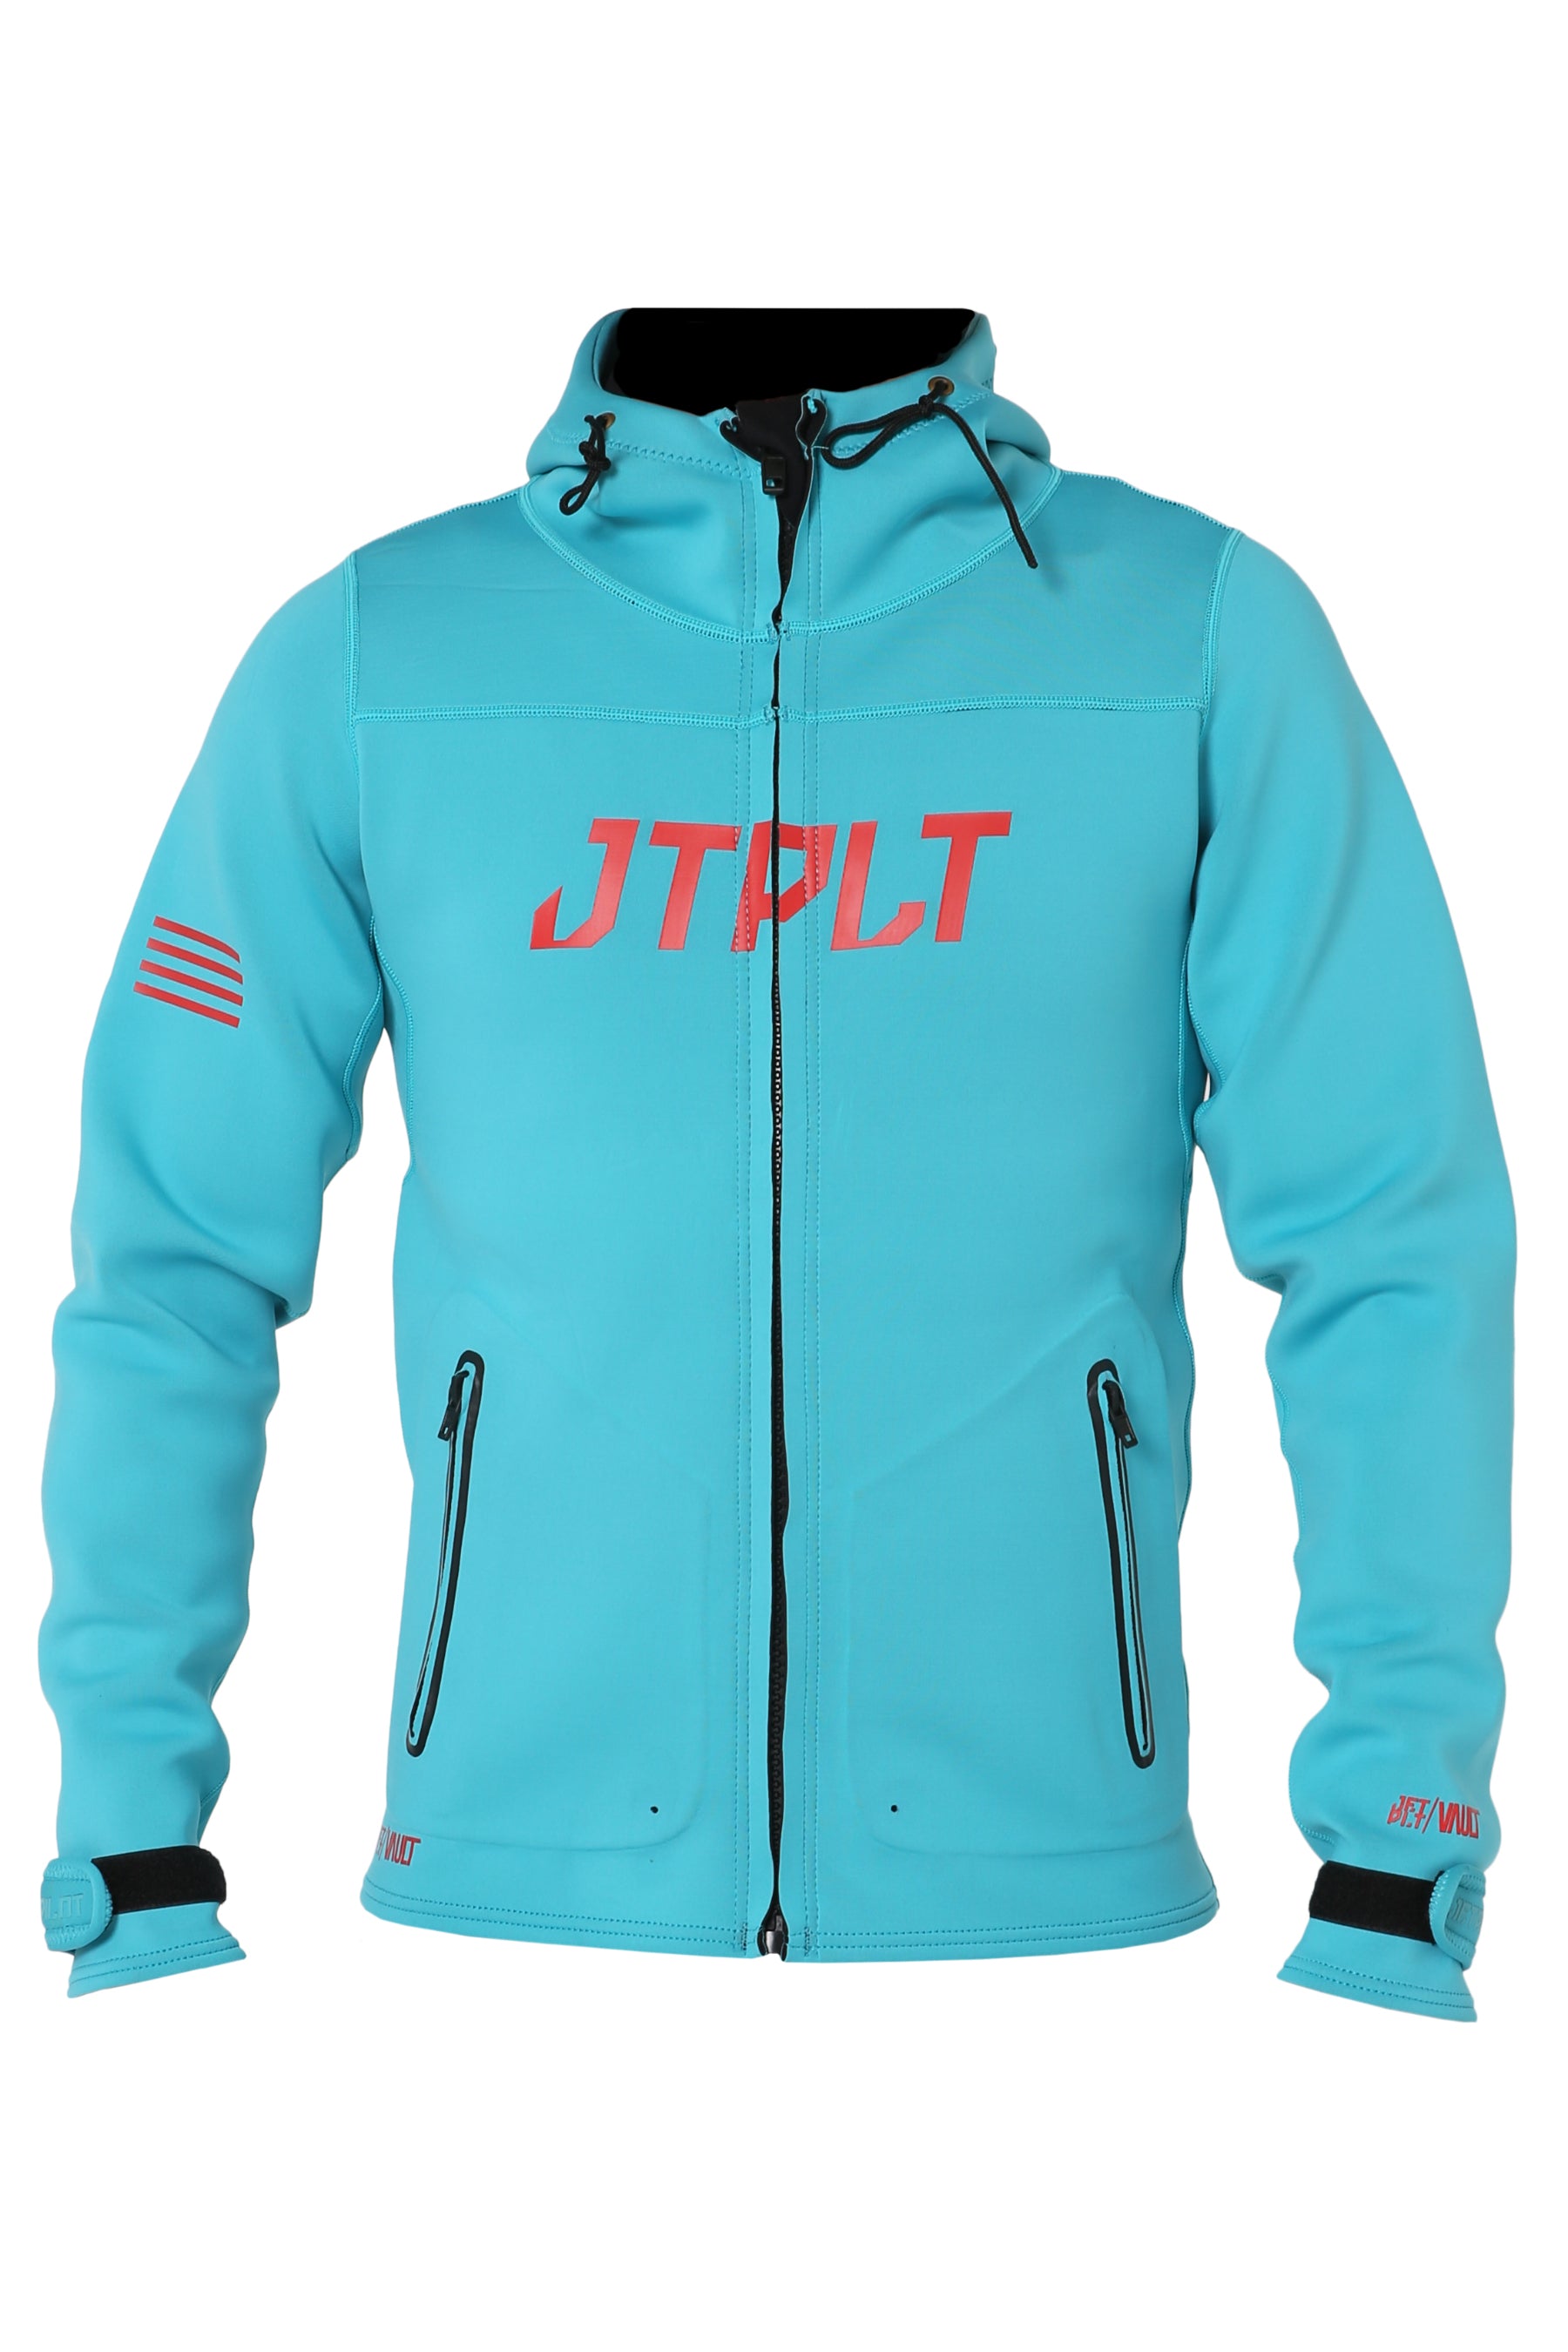 Jetpilot Rx Vault Mens Tour Coat - Blue